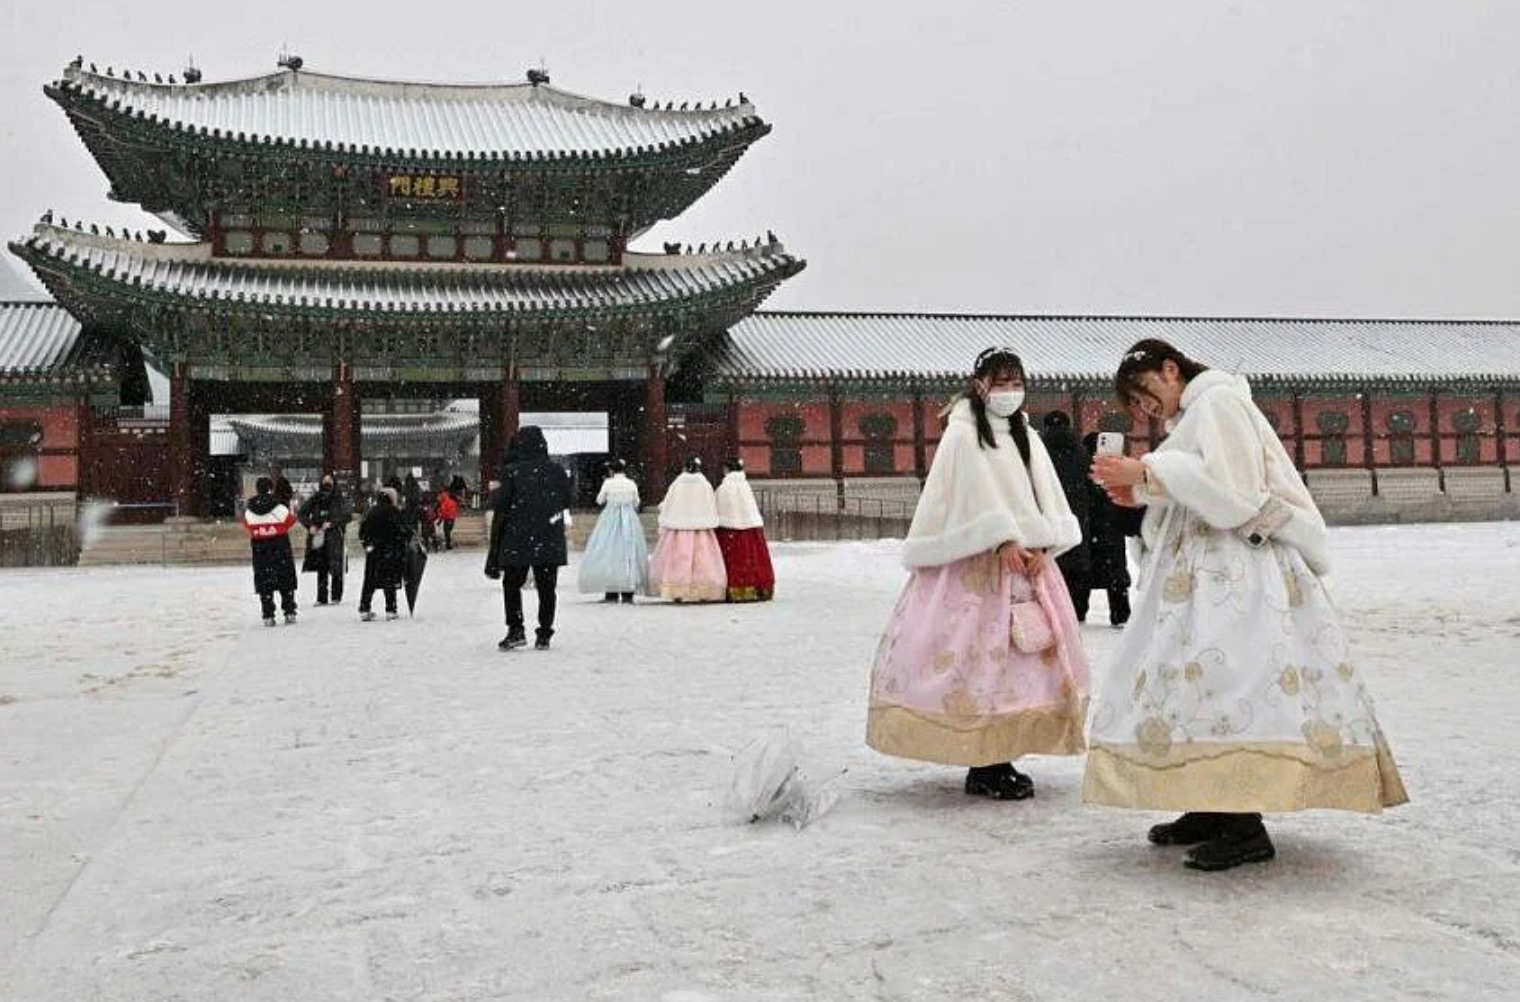 Tuyết rơi ở Cung điện Gyeongbokgung, Seoul, Hàn Quốc ngày 26.1.2023. Ảnh: AFP